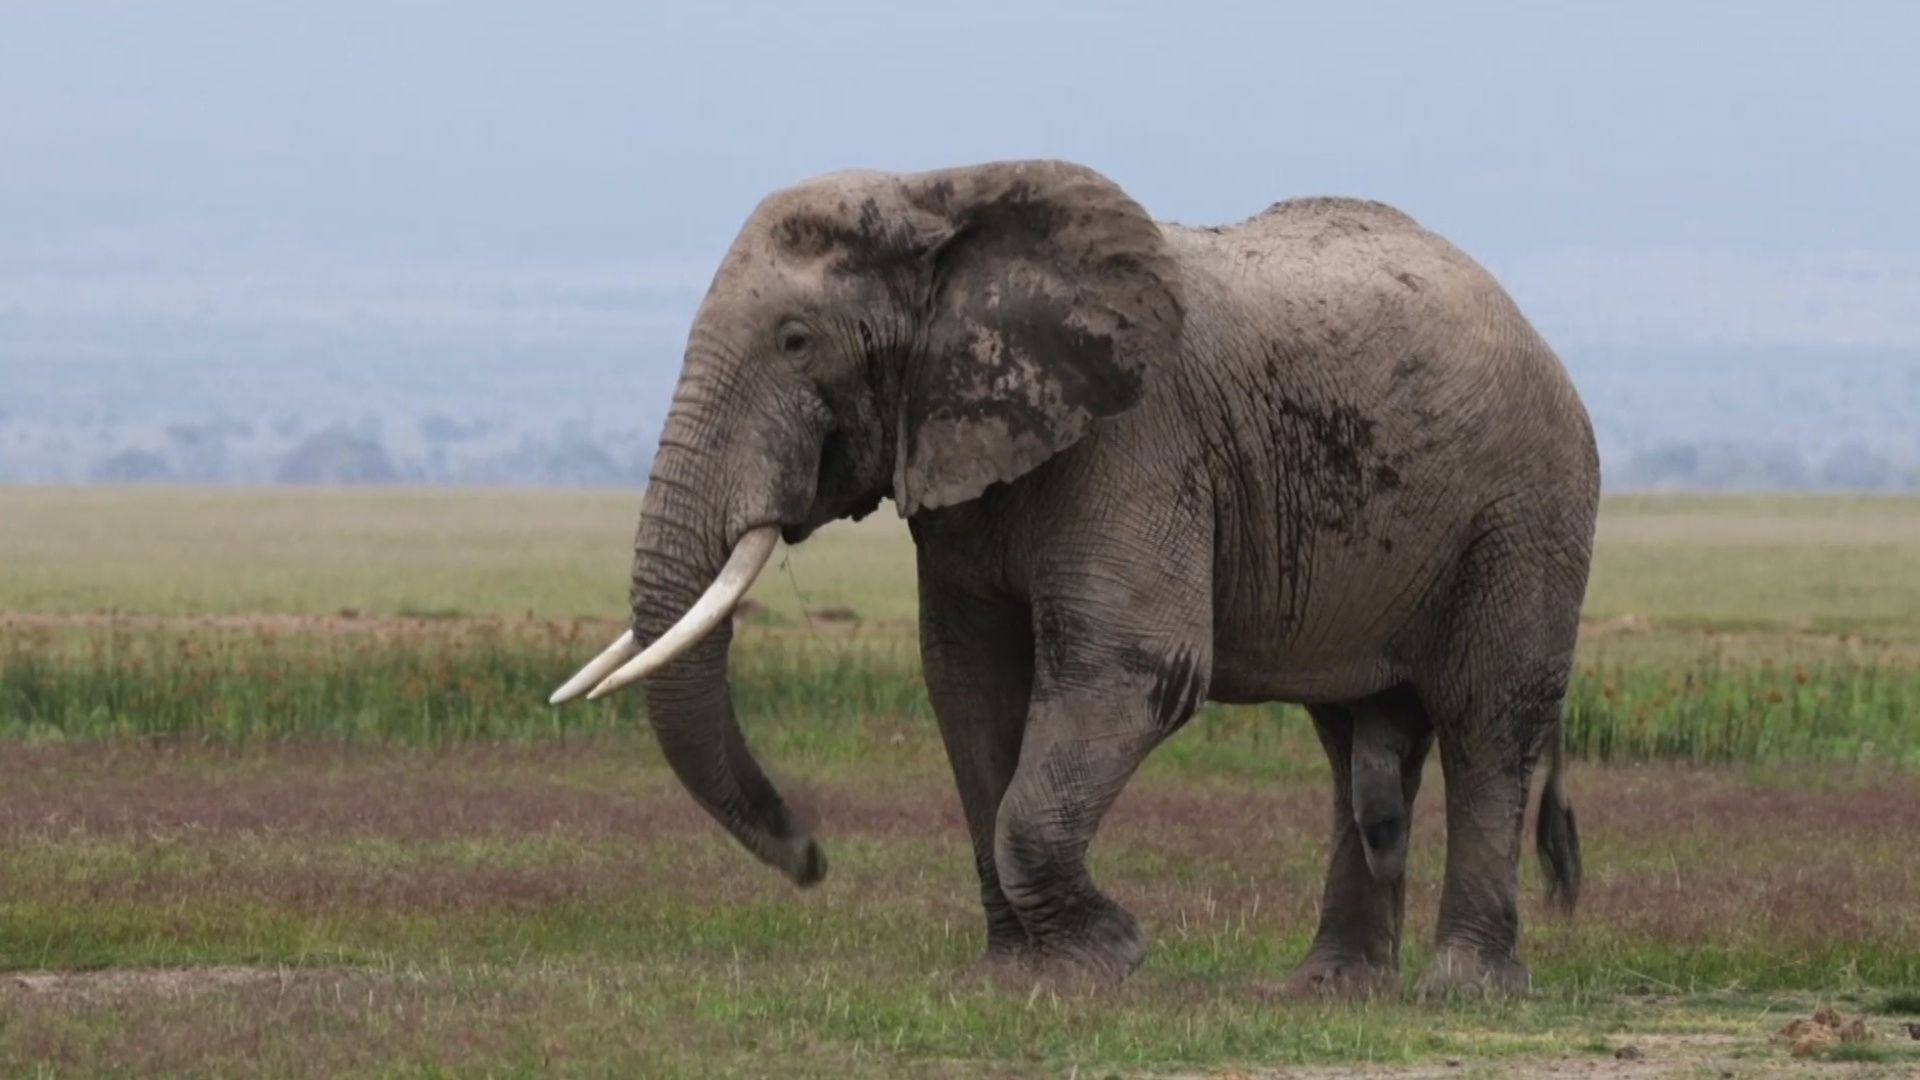 Запрет на торговлю слоновой костью вступил в силу в Великобритании